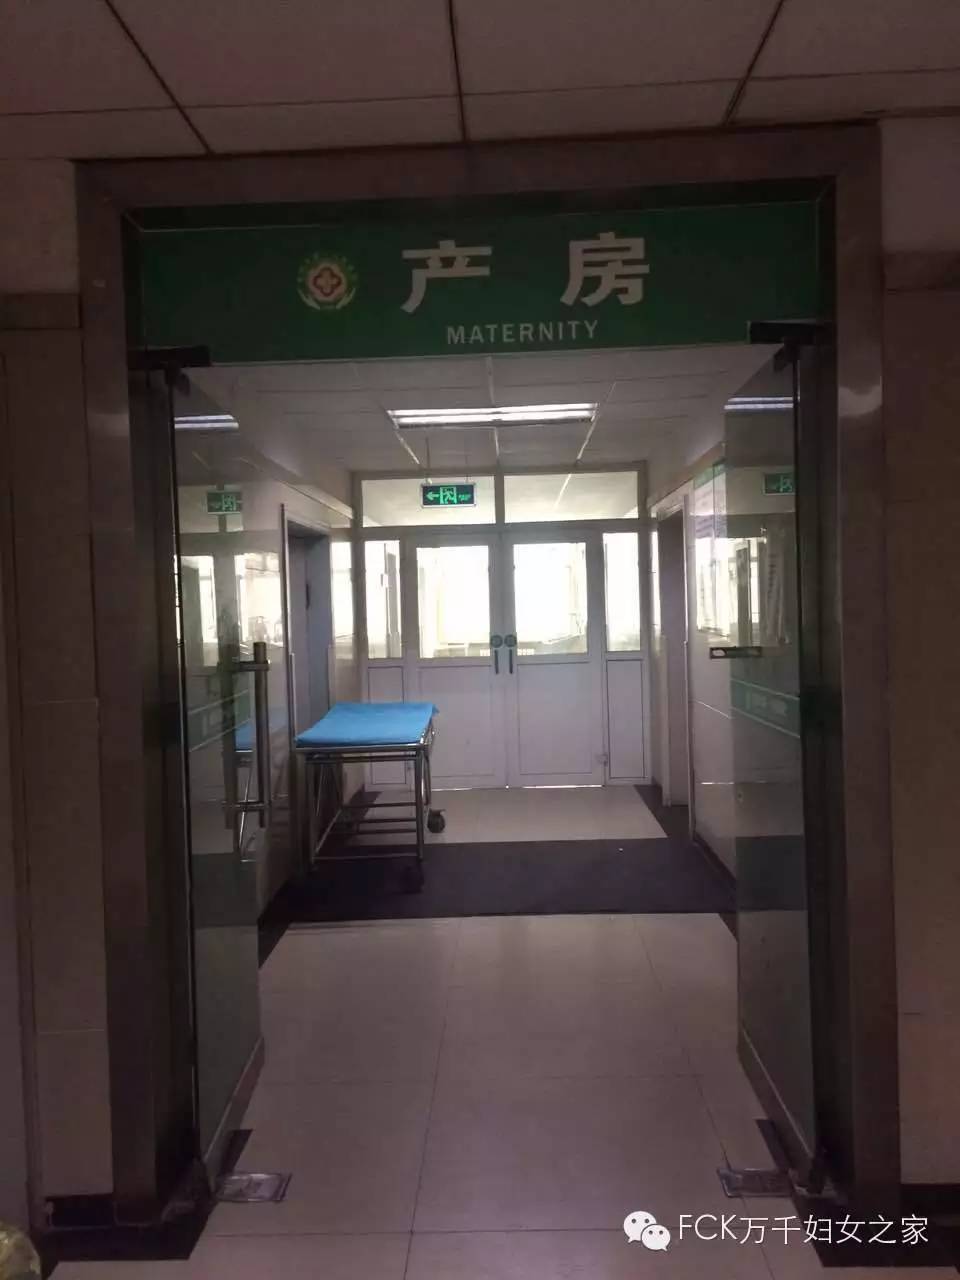 咸阳市第一人民医院妇产科简介